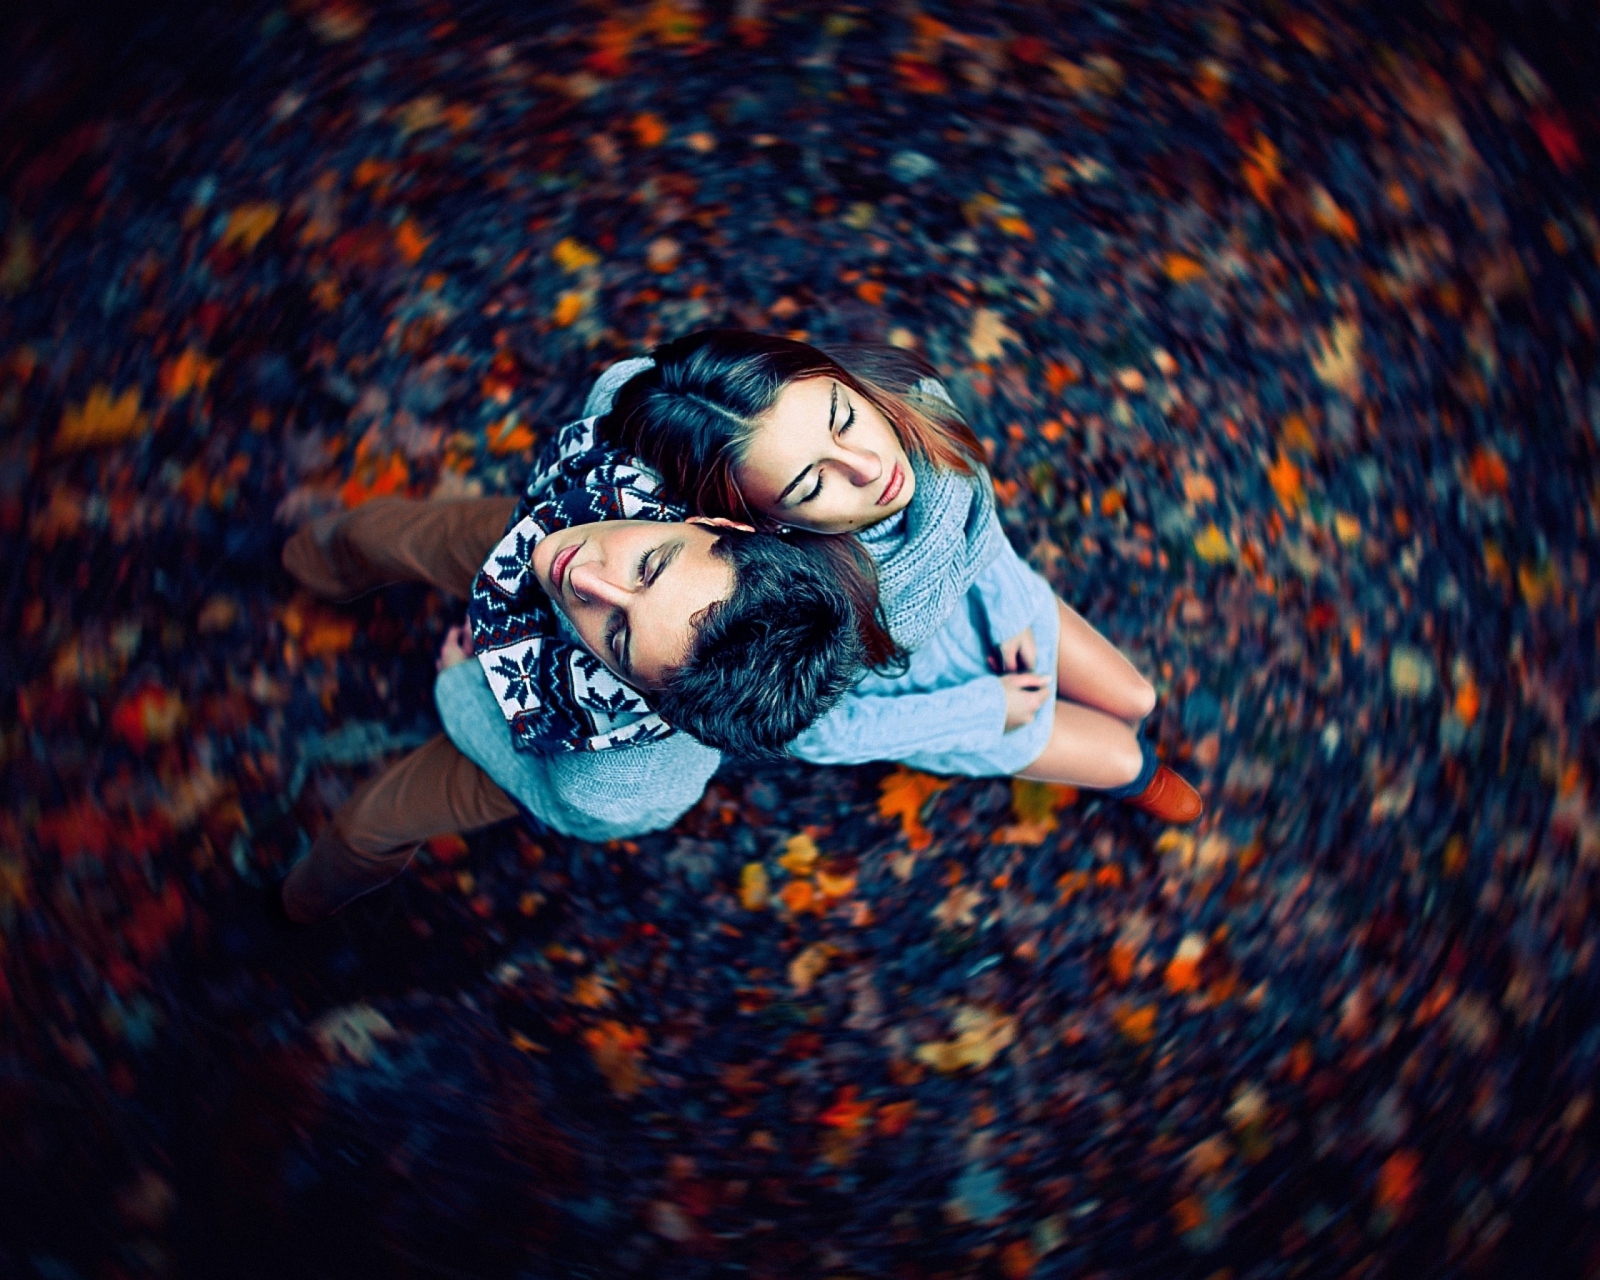 Autumn Couple's Portrait wallpaper 1600x1280